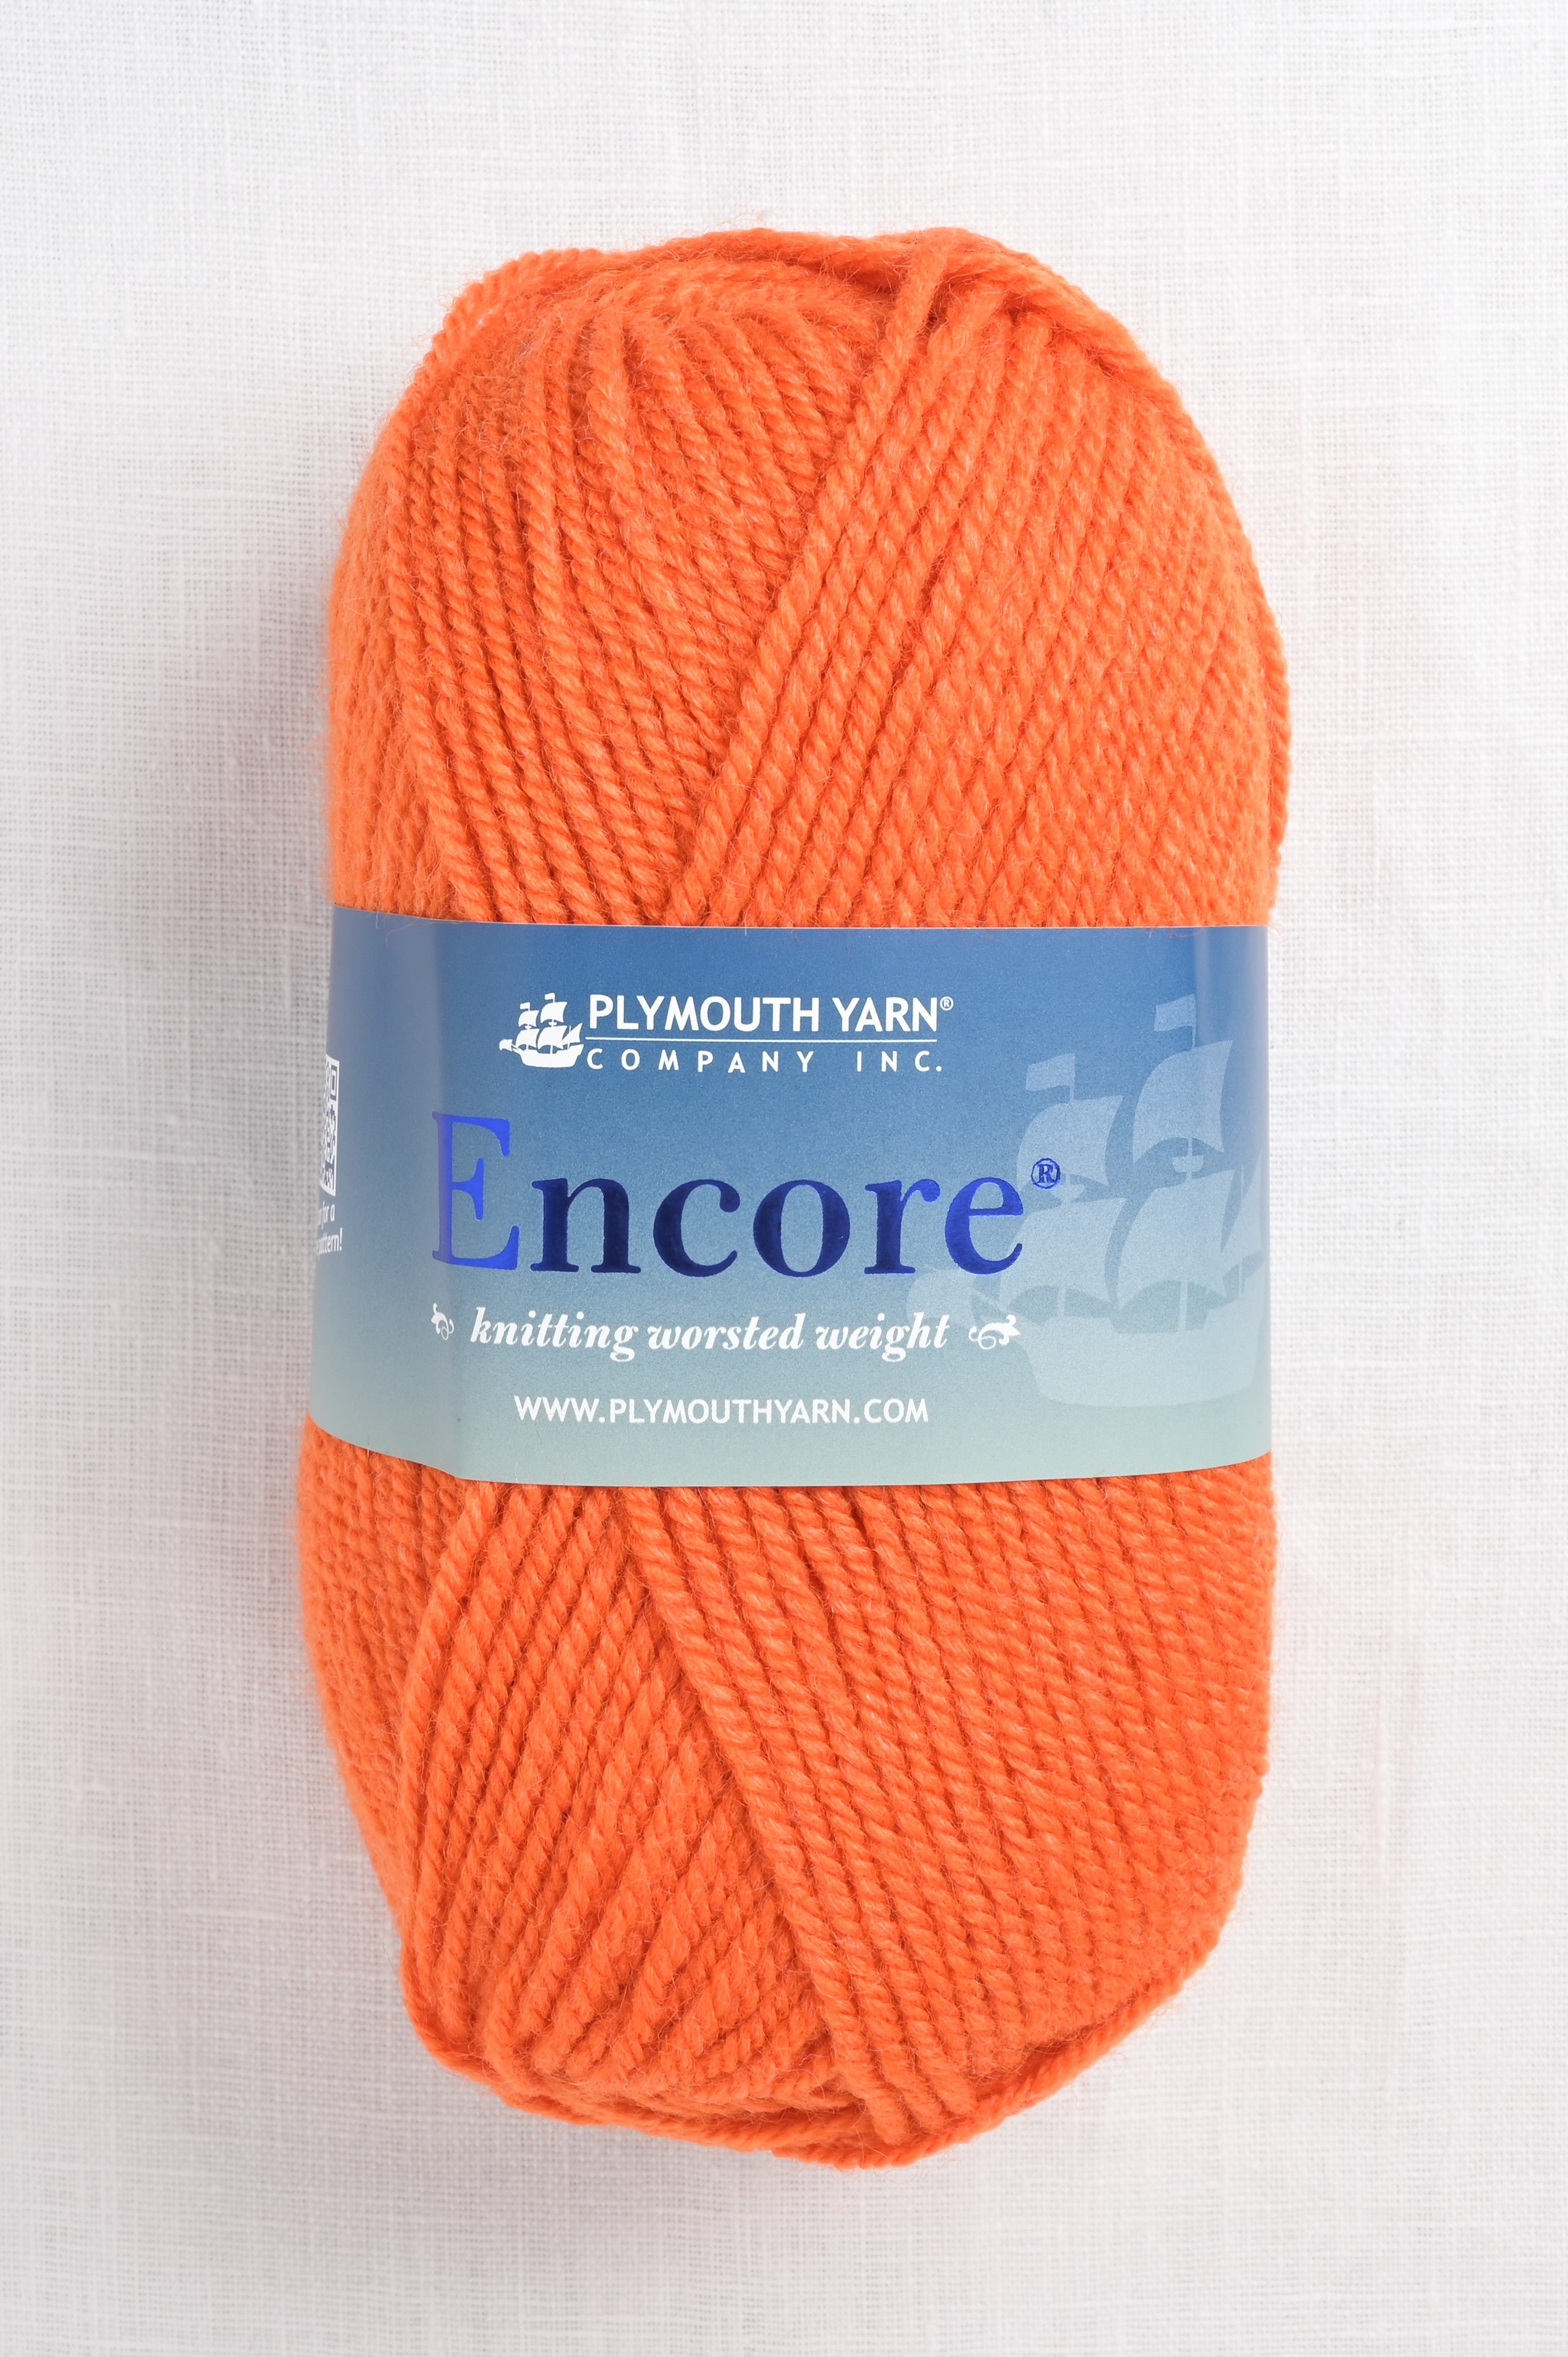 Plymouth Yarn Encore Worsted Yarn - 1383 Bright Orange